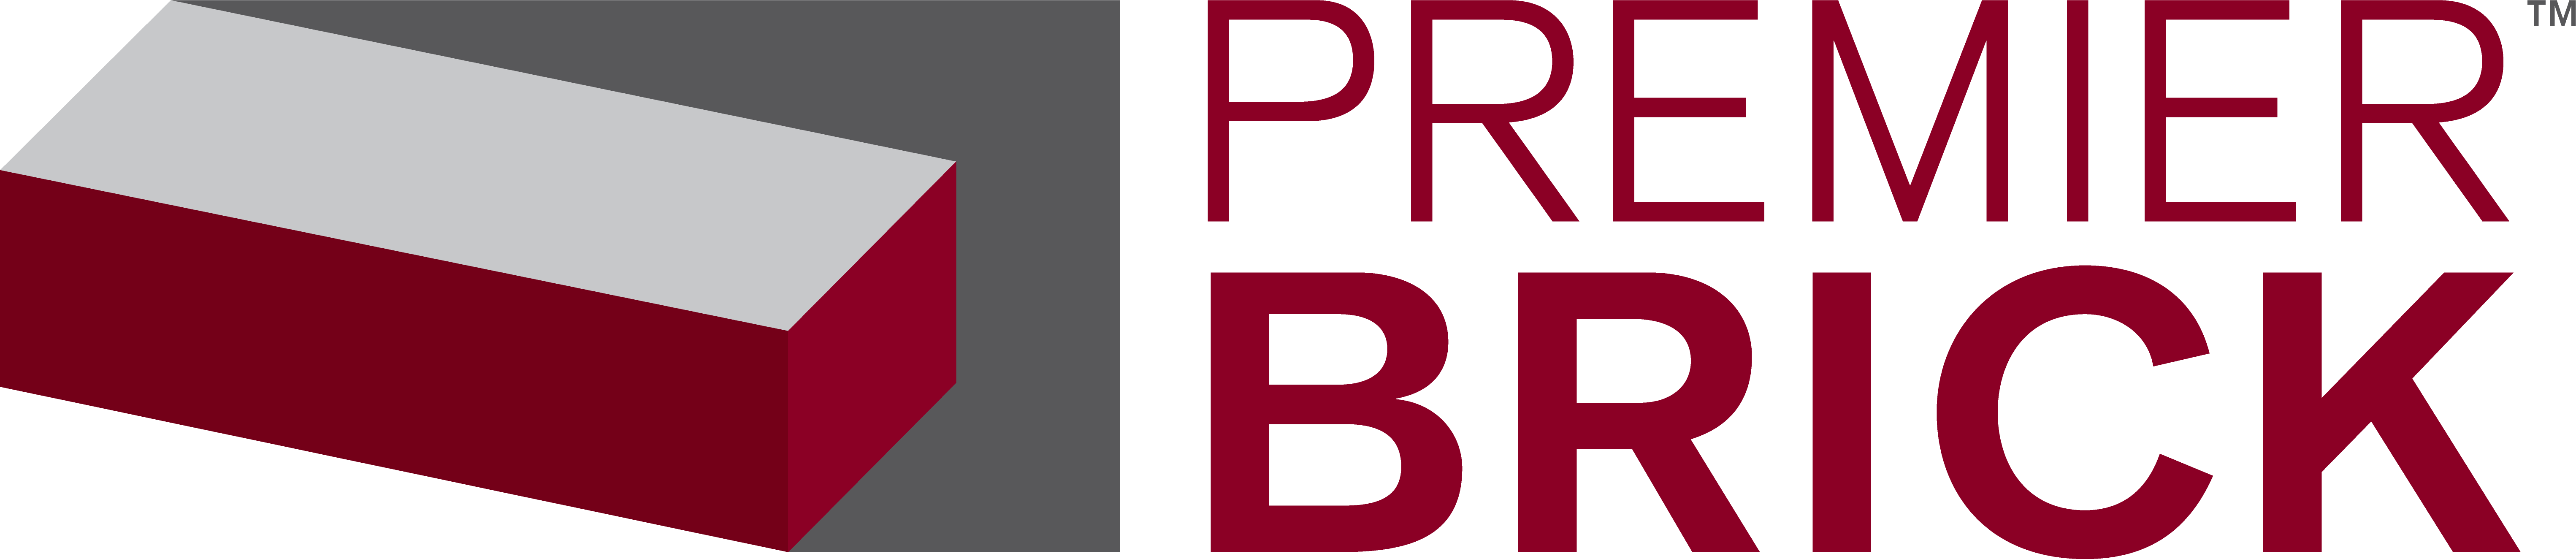 Premier Brick Landscape Logo TM